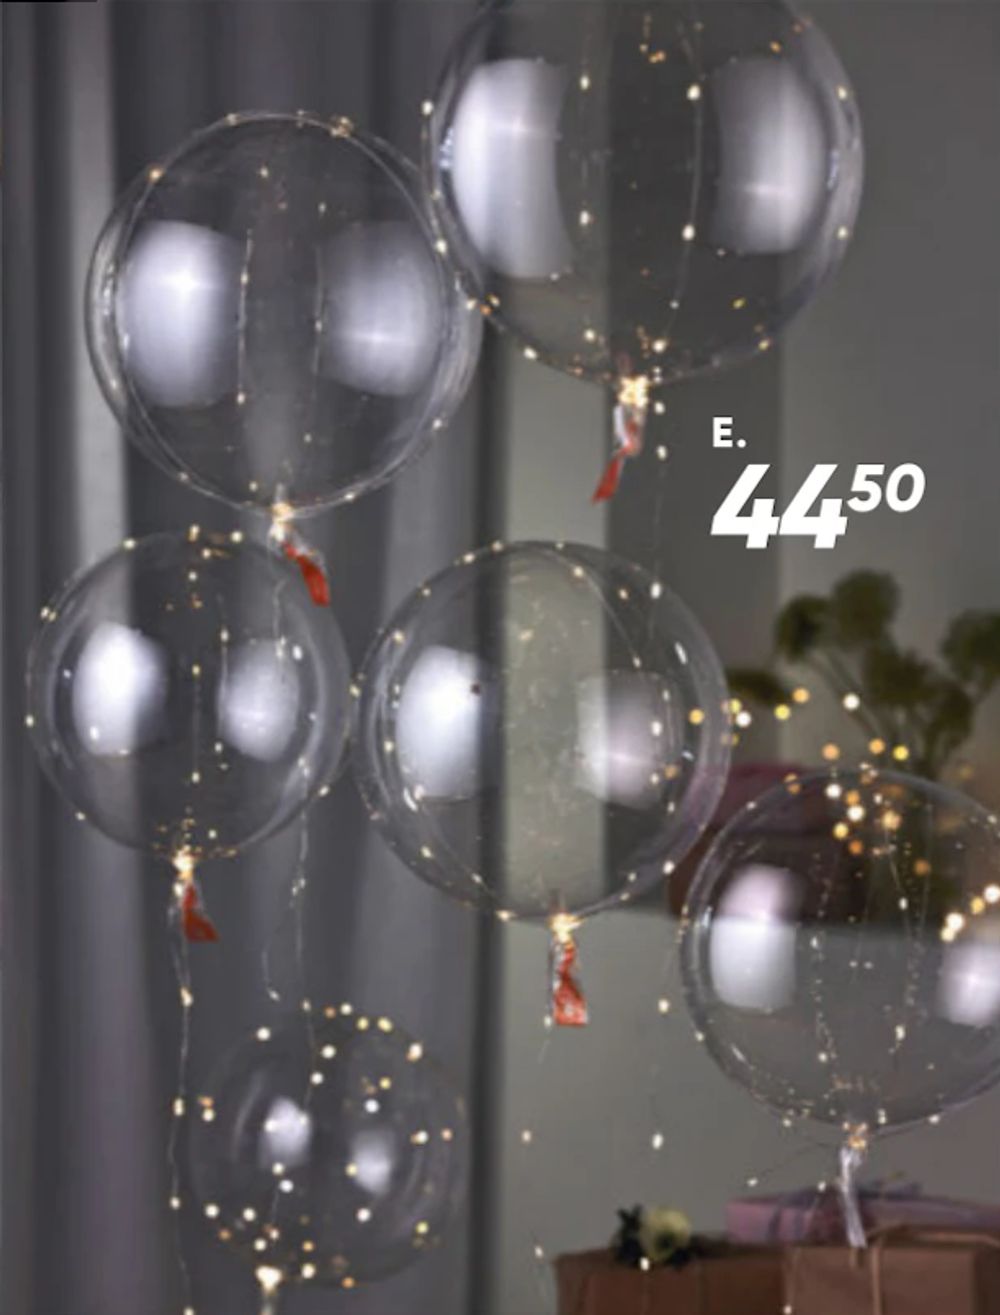 Tilbud på Balloner med LED fra Bilka til 44,50 kr.